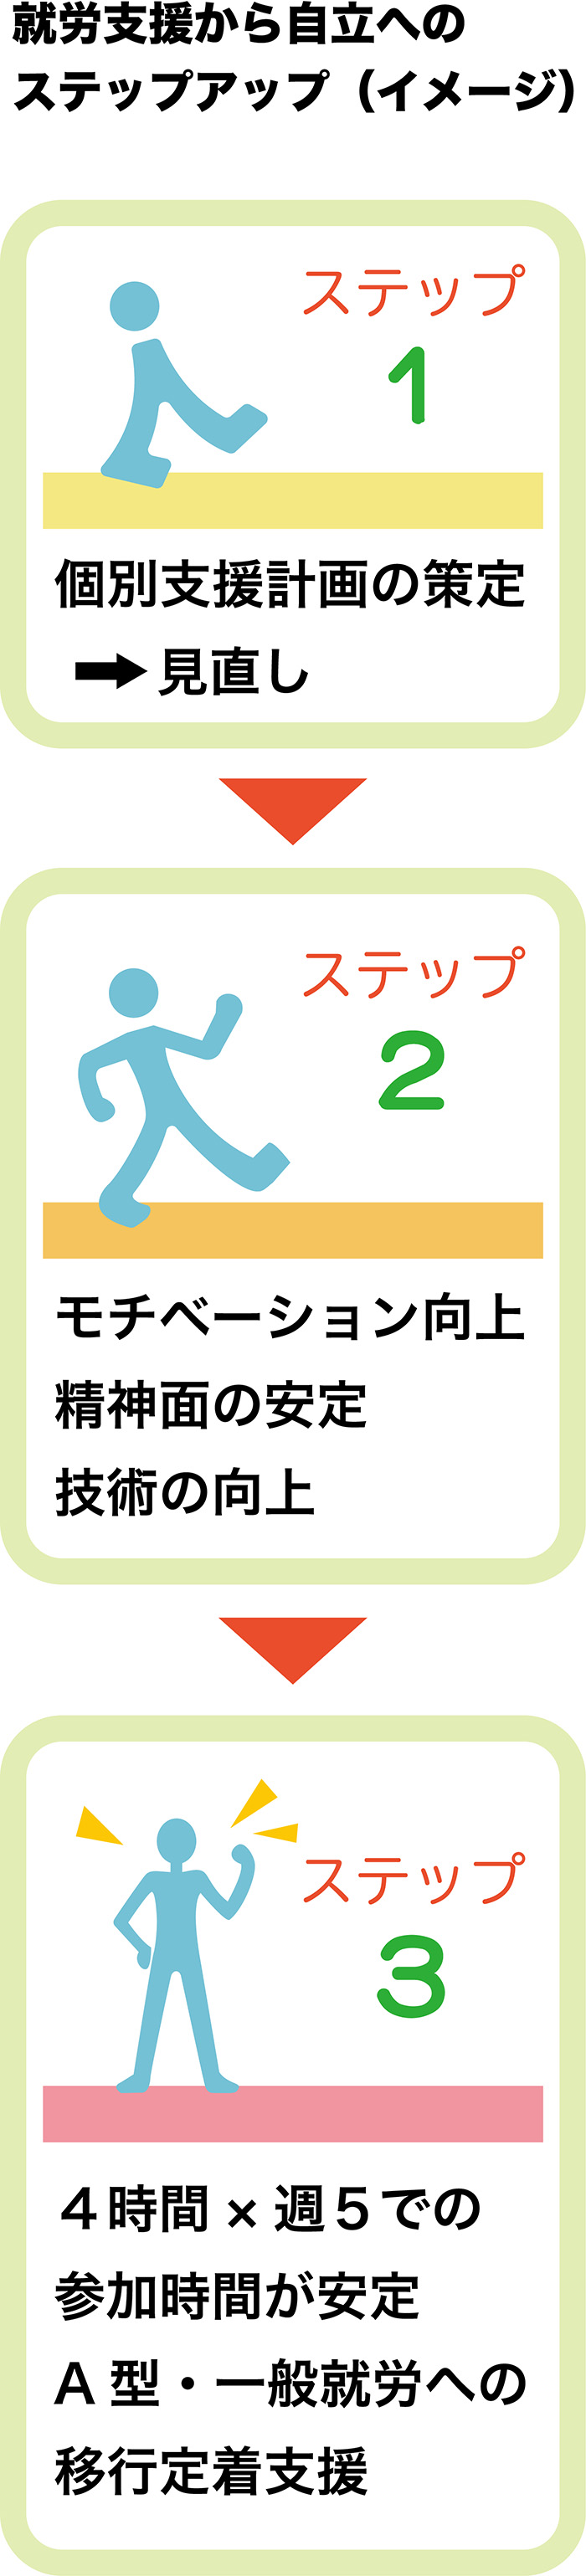 大阪にある就労支援B型事業所エー・サポートのえの、就労へのステップアップイメージ